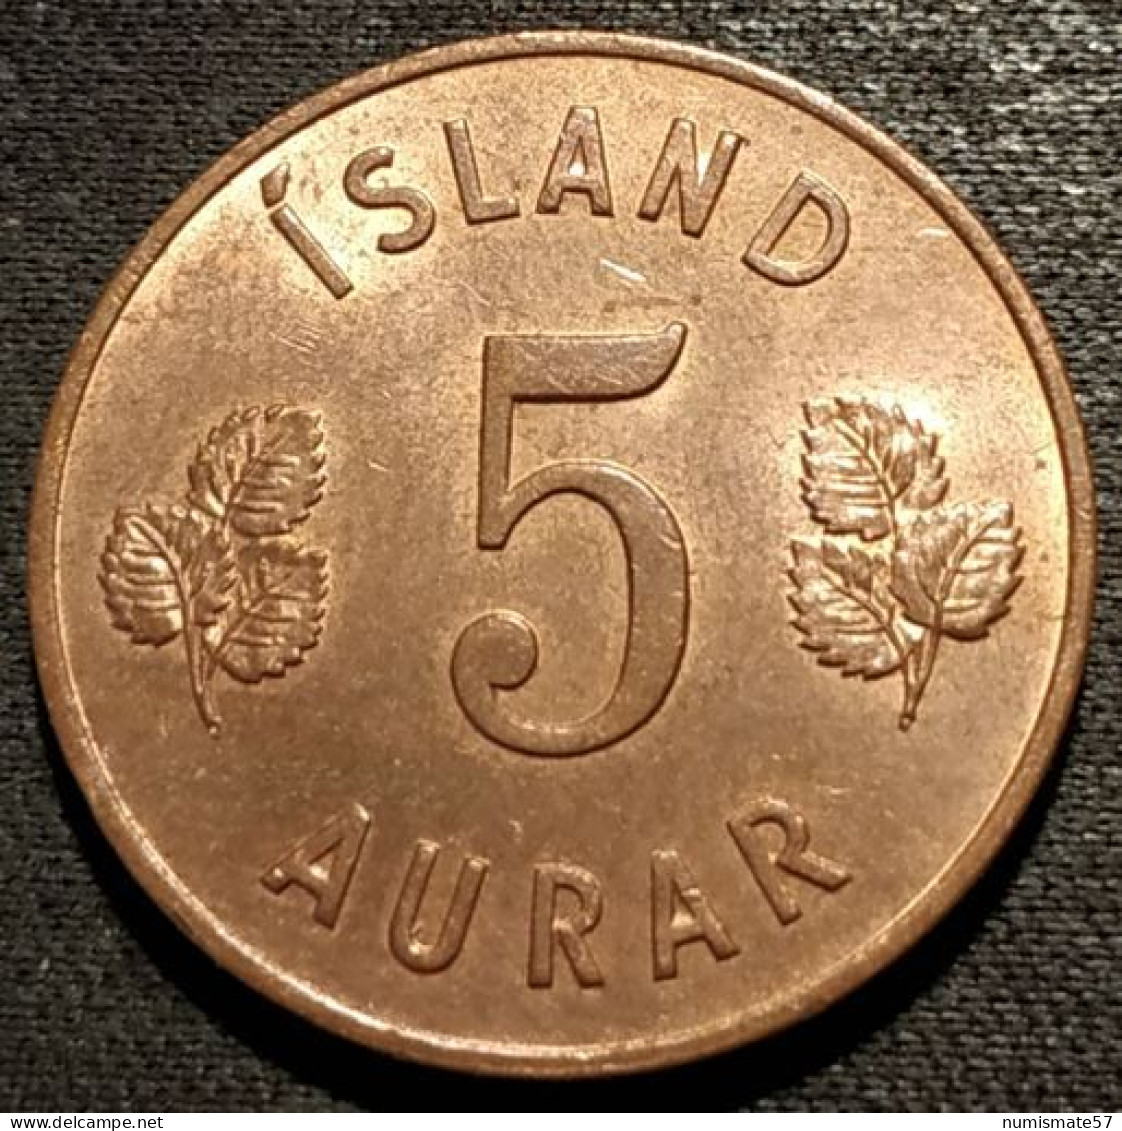 ISLANDE - ICELAND - 5 AURAR 1965 - KM 9 - ISLAND - Islandia